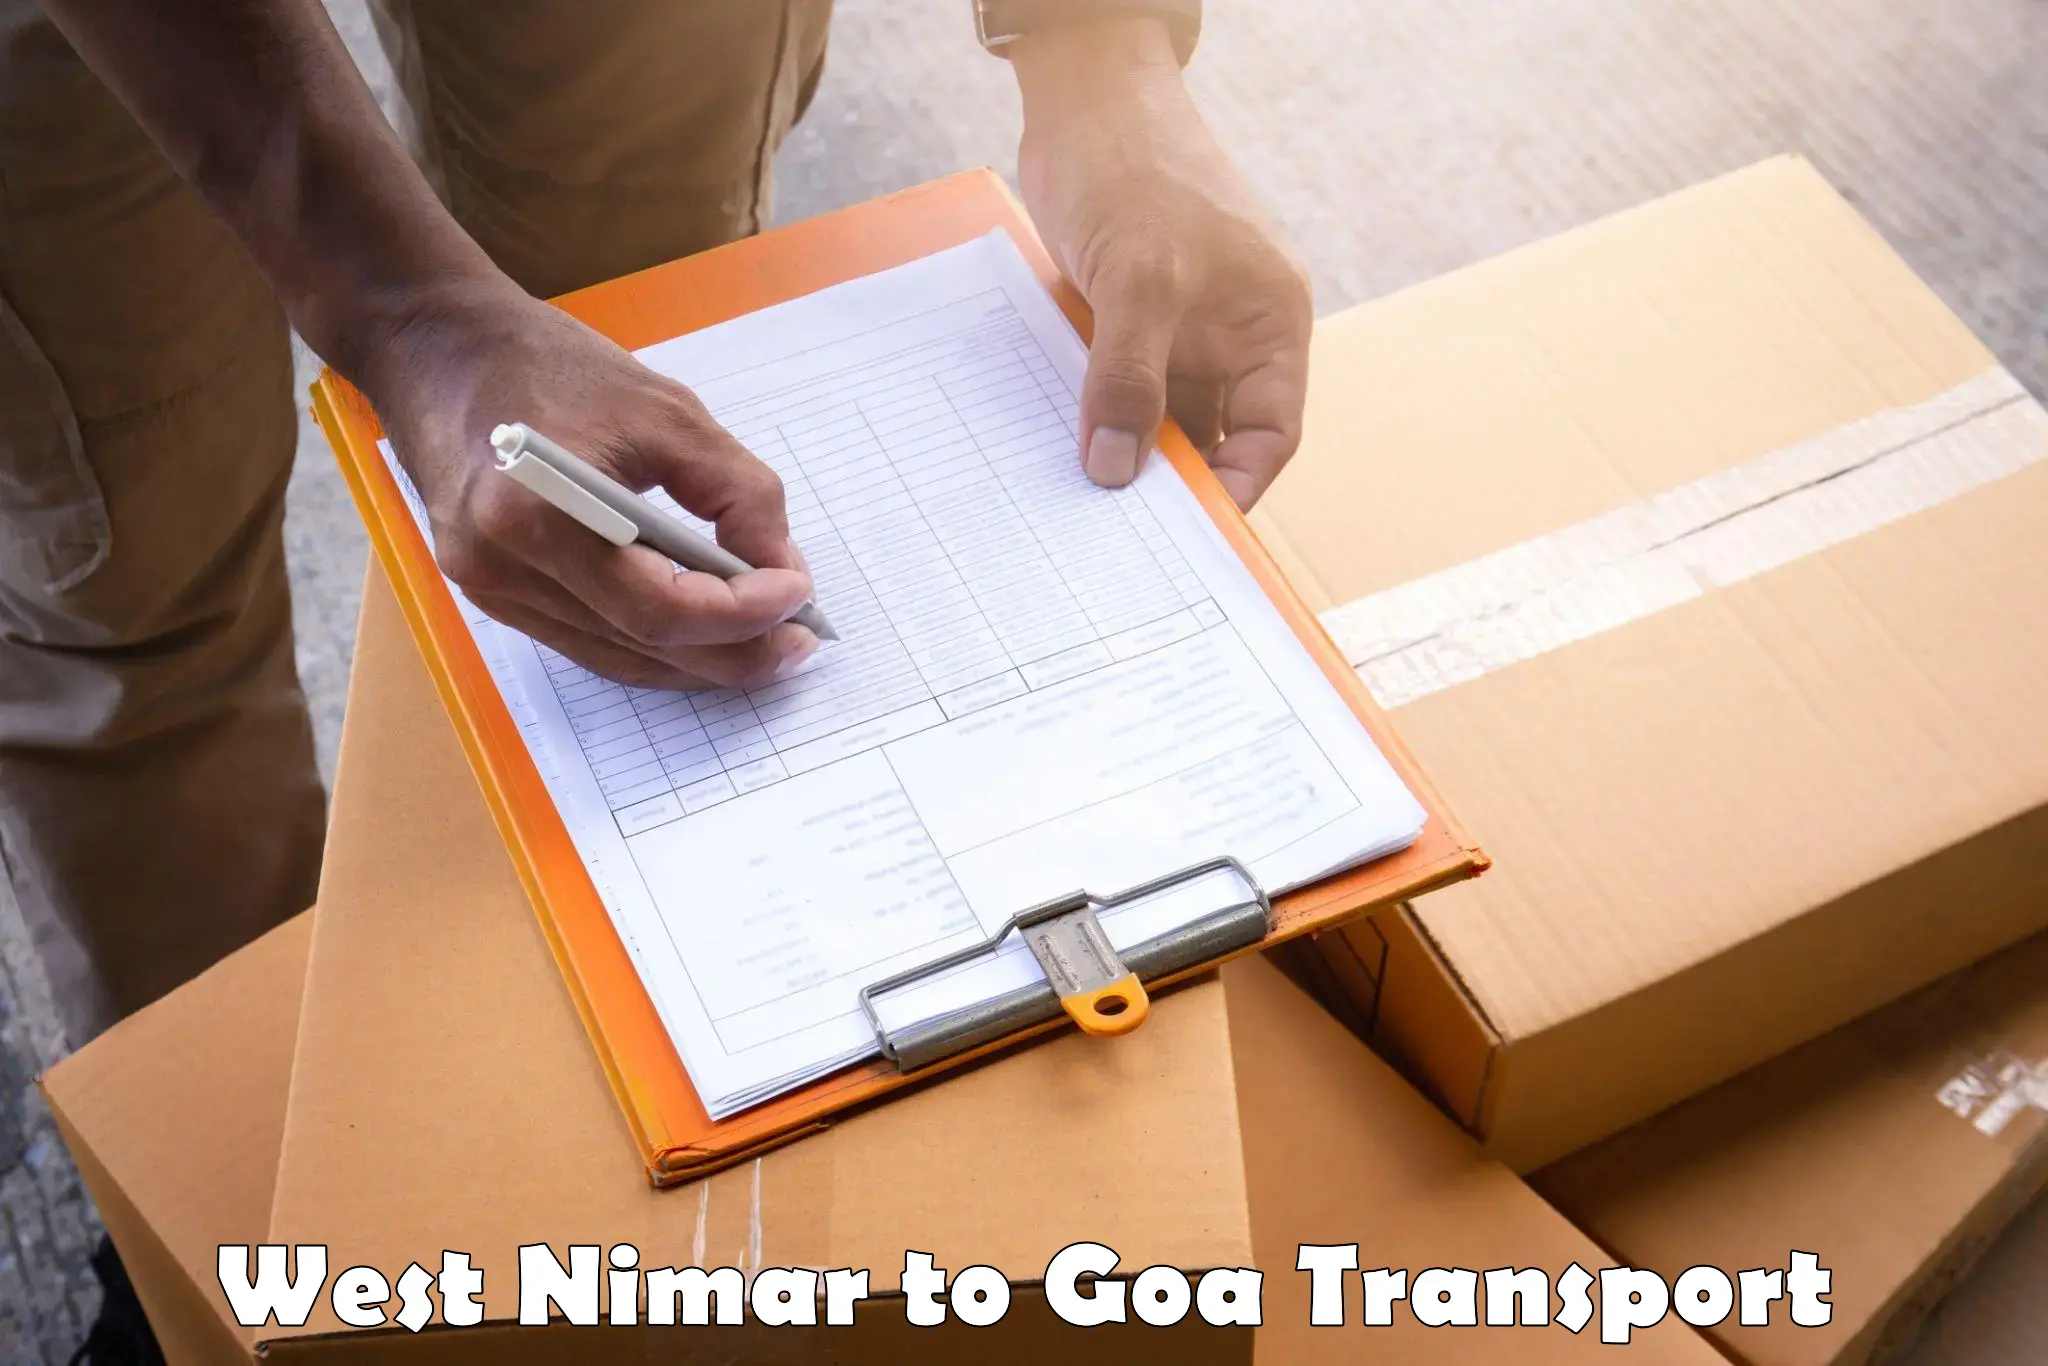 Goods delivery service West Nimar to Panaji